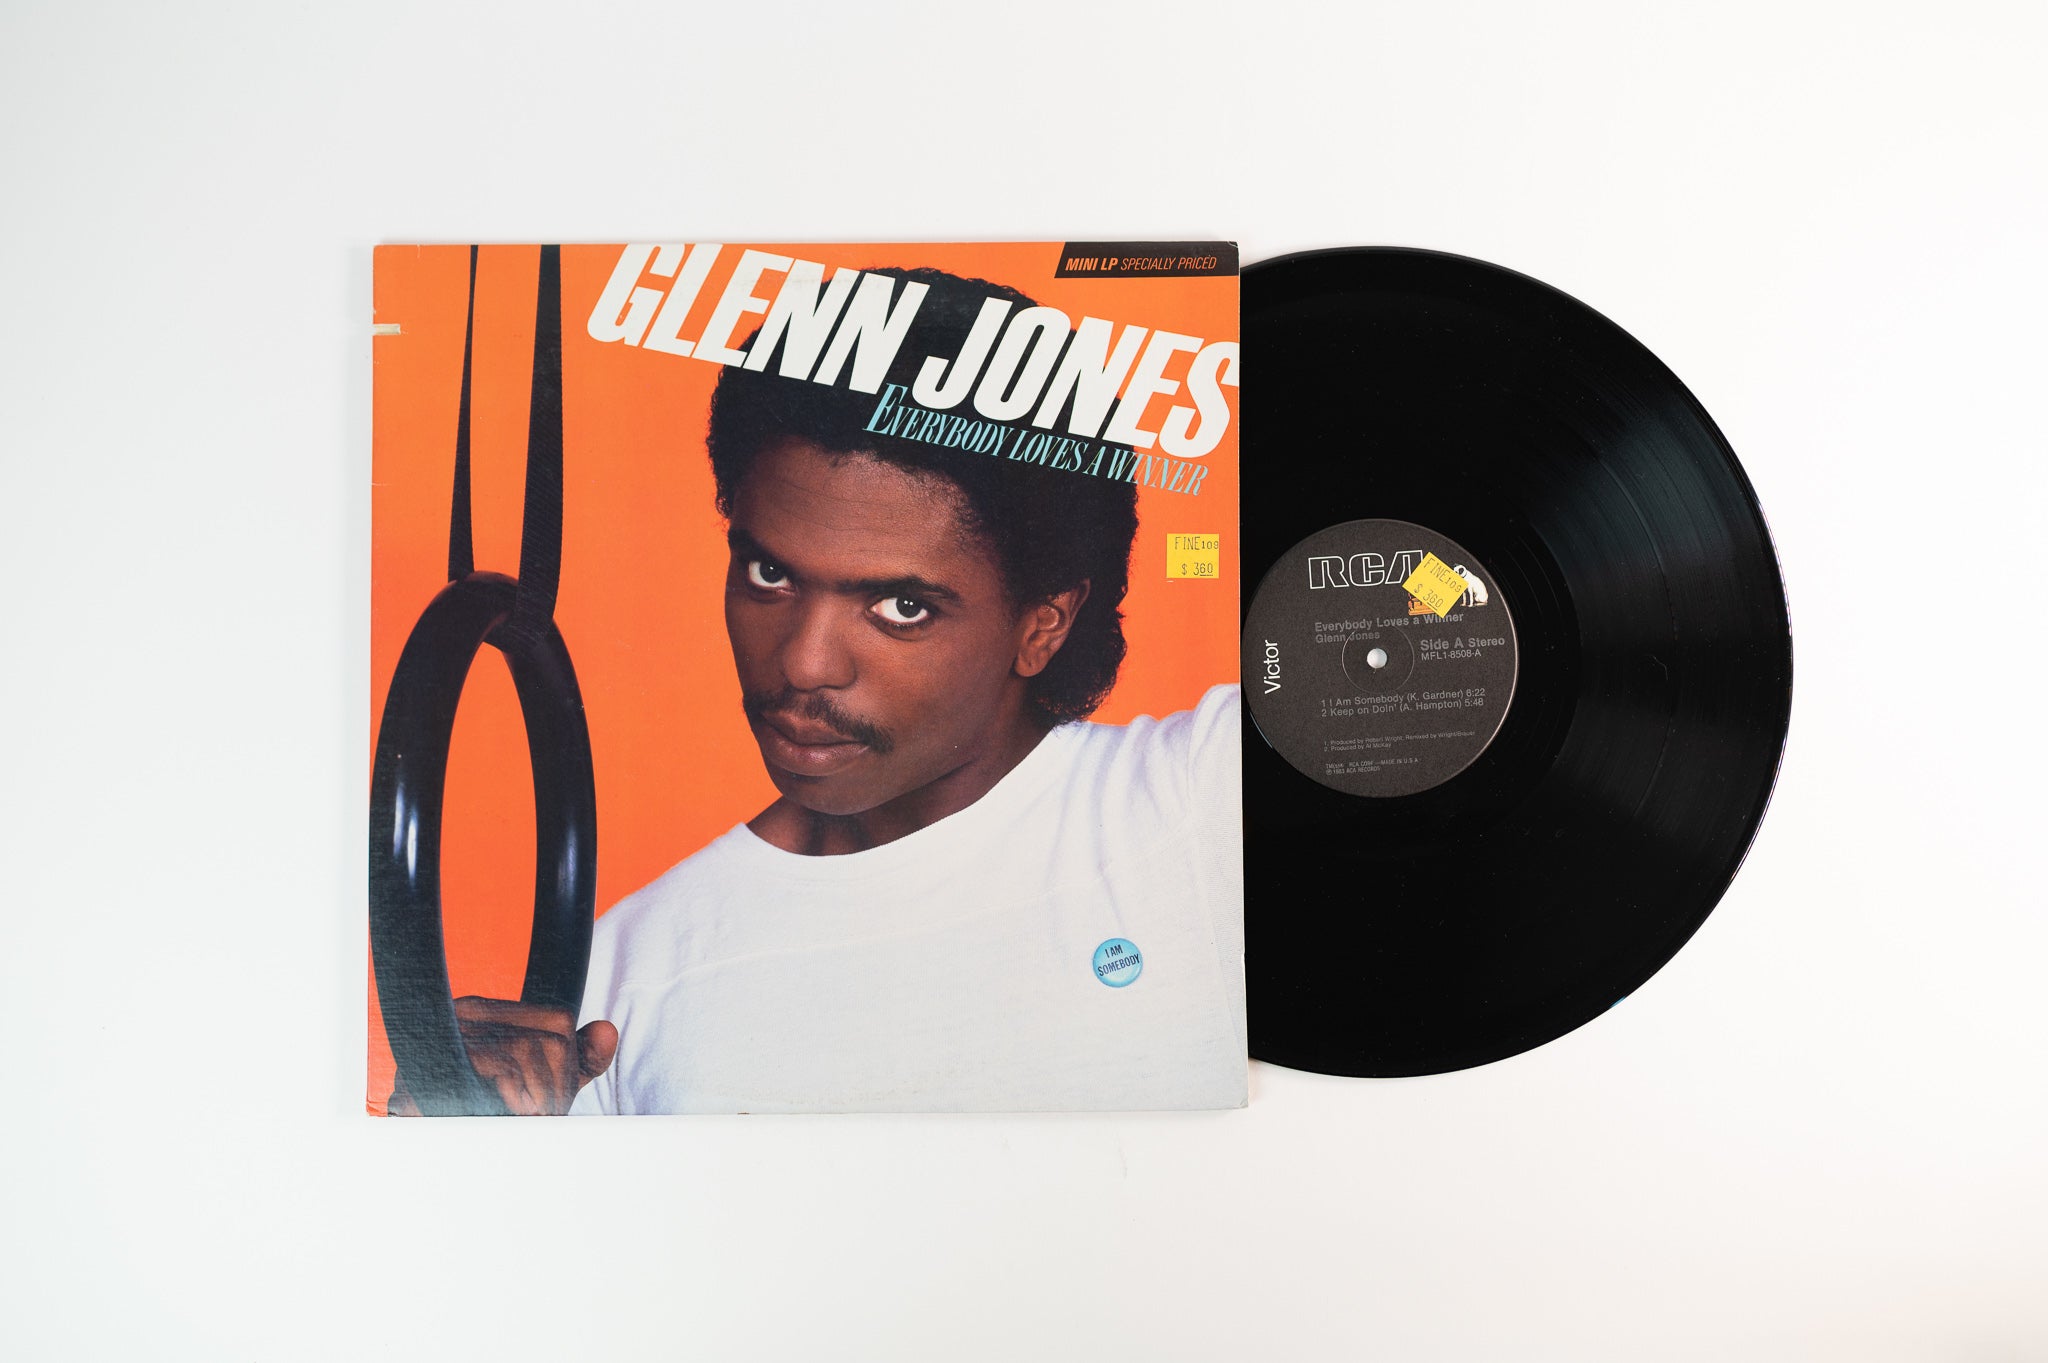 Glenn Jones - Everybody Loves A Winner on RCA